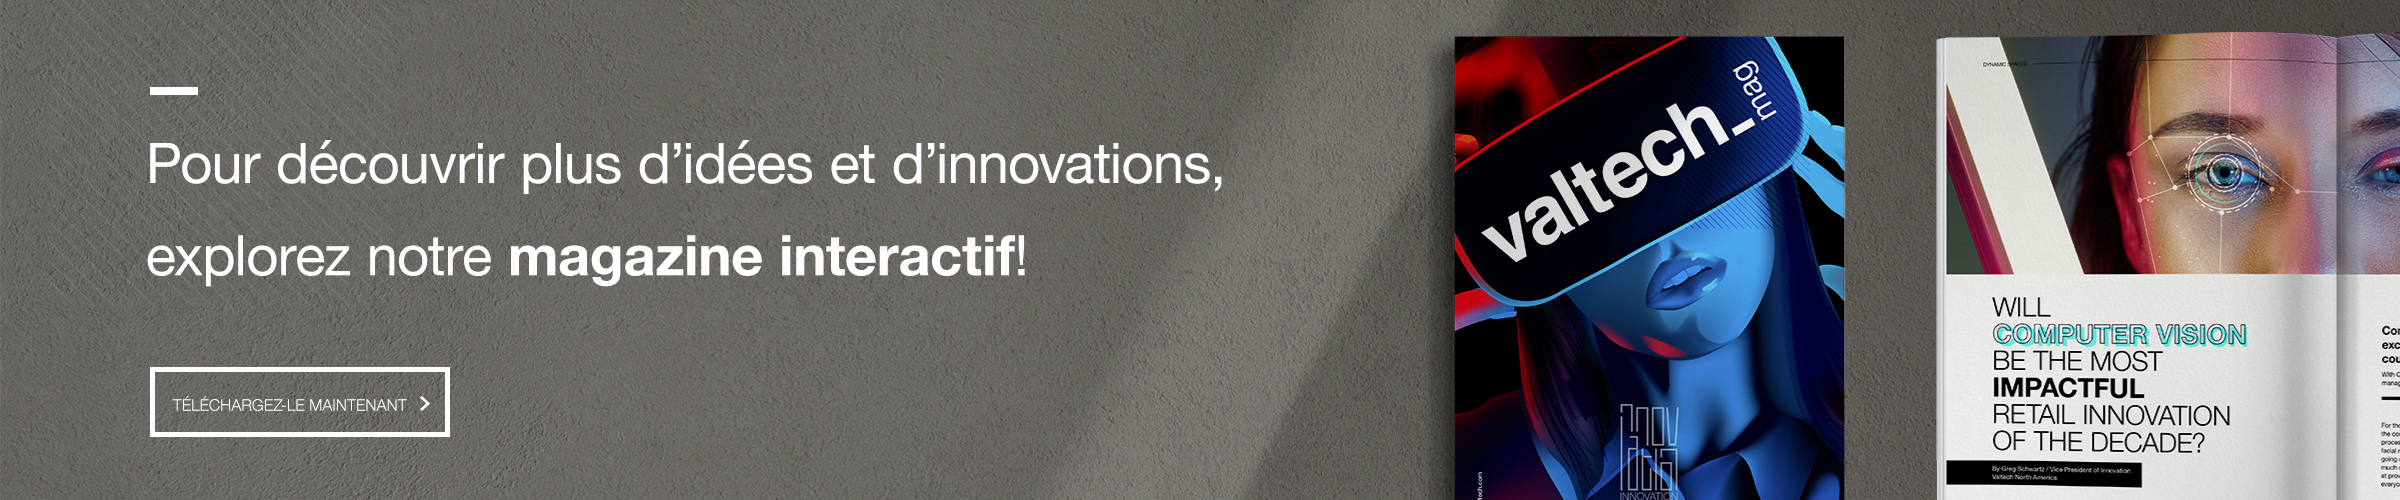 Valtech-Mag-Innovation-Program-Blog-Ad.png